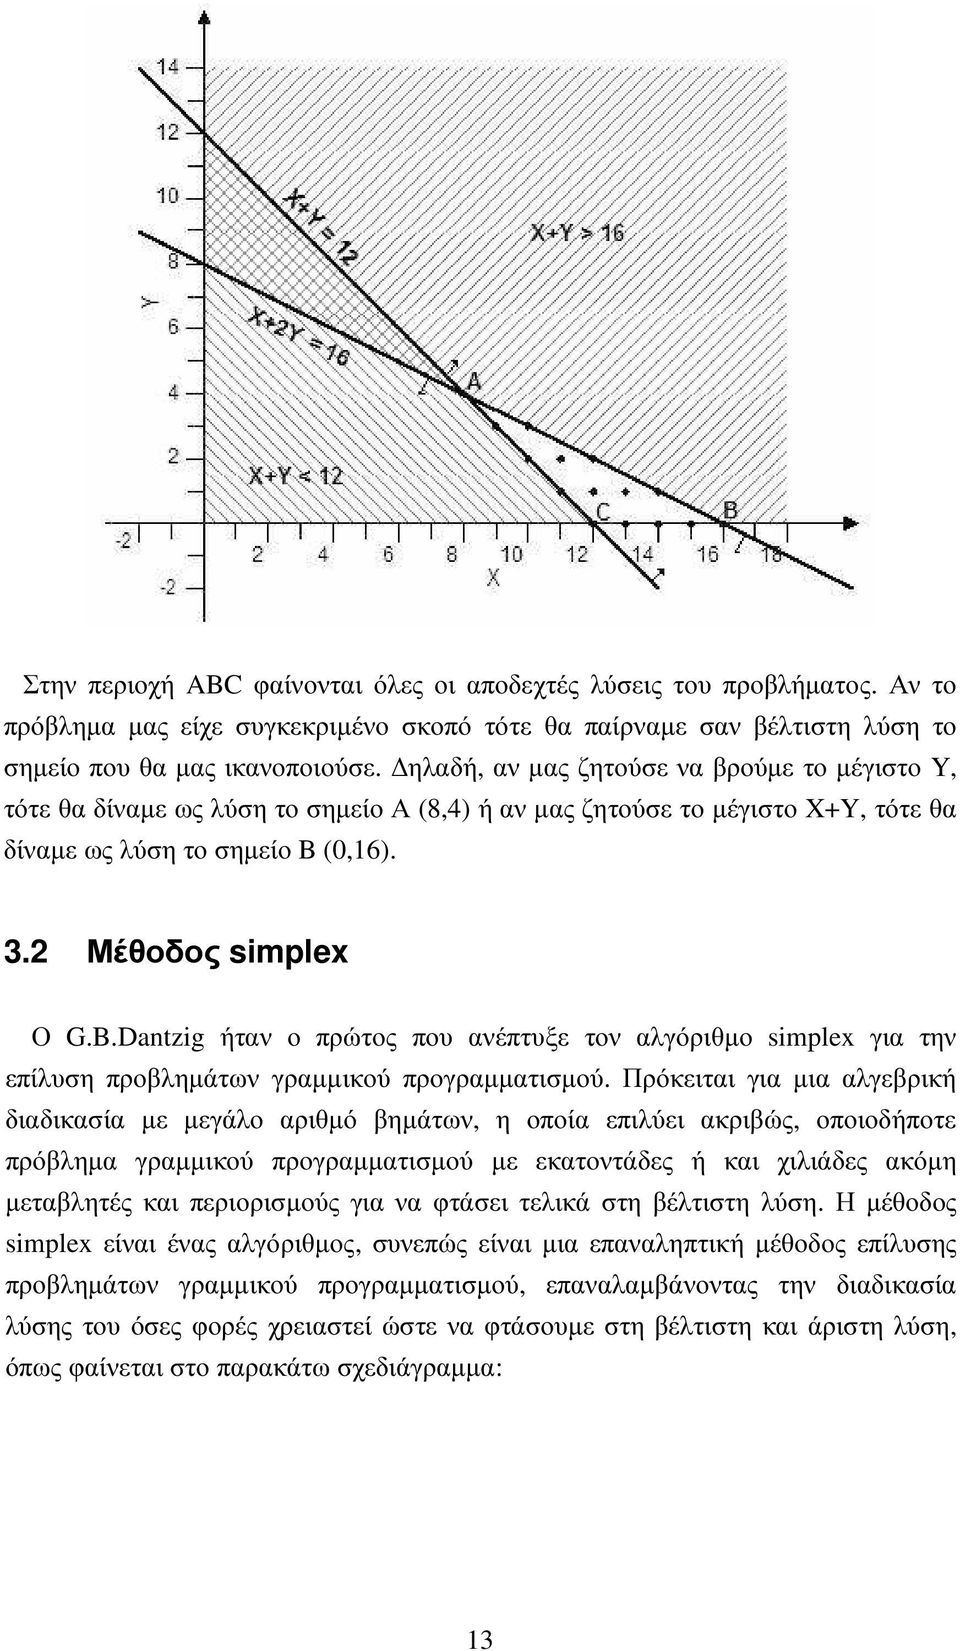 (0,16). 3.2 Μέθοδος simplex Ο G.B.Dantzig ήταν ο πρώτος που ανέπτυξε τον αλγόριθµο simplex για την επίλυση προβληµάτων γραµµικού προγραµµατισµού.